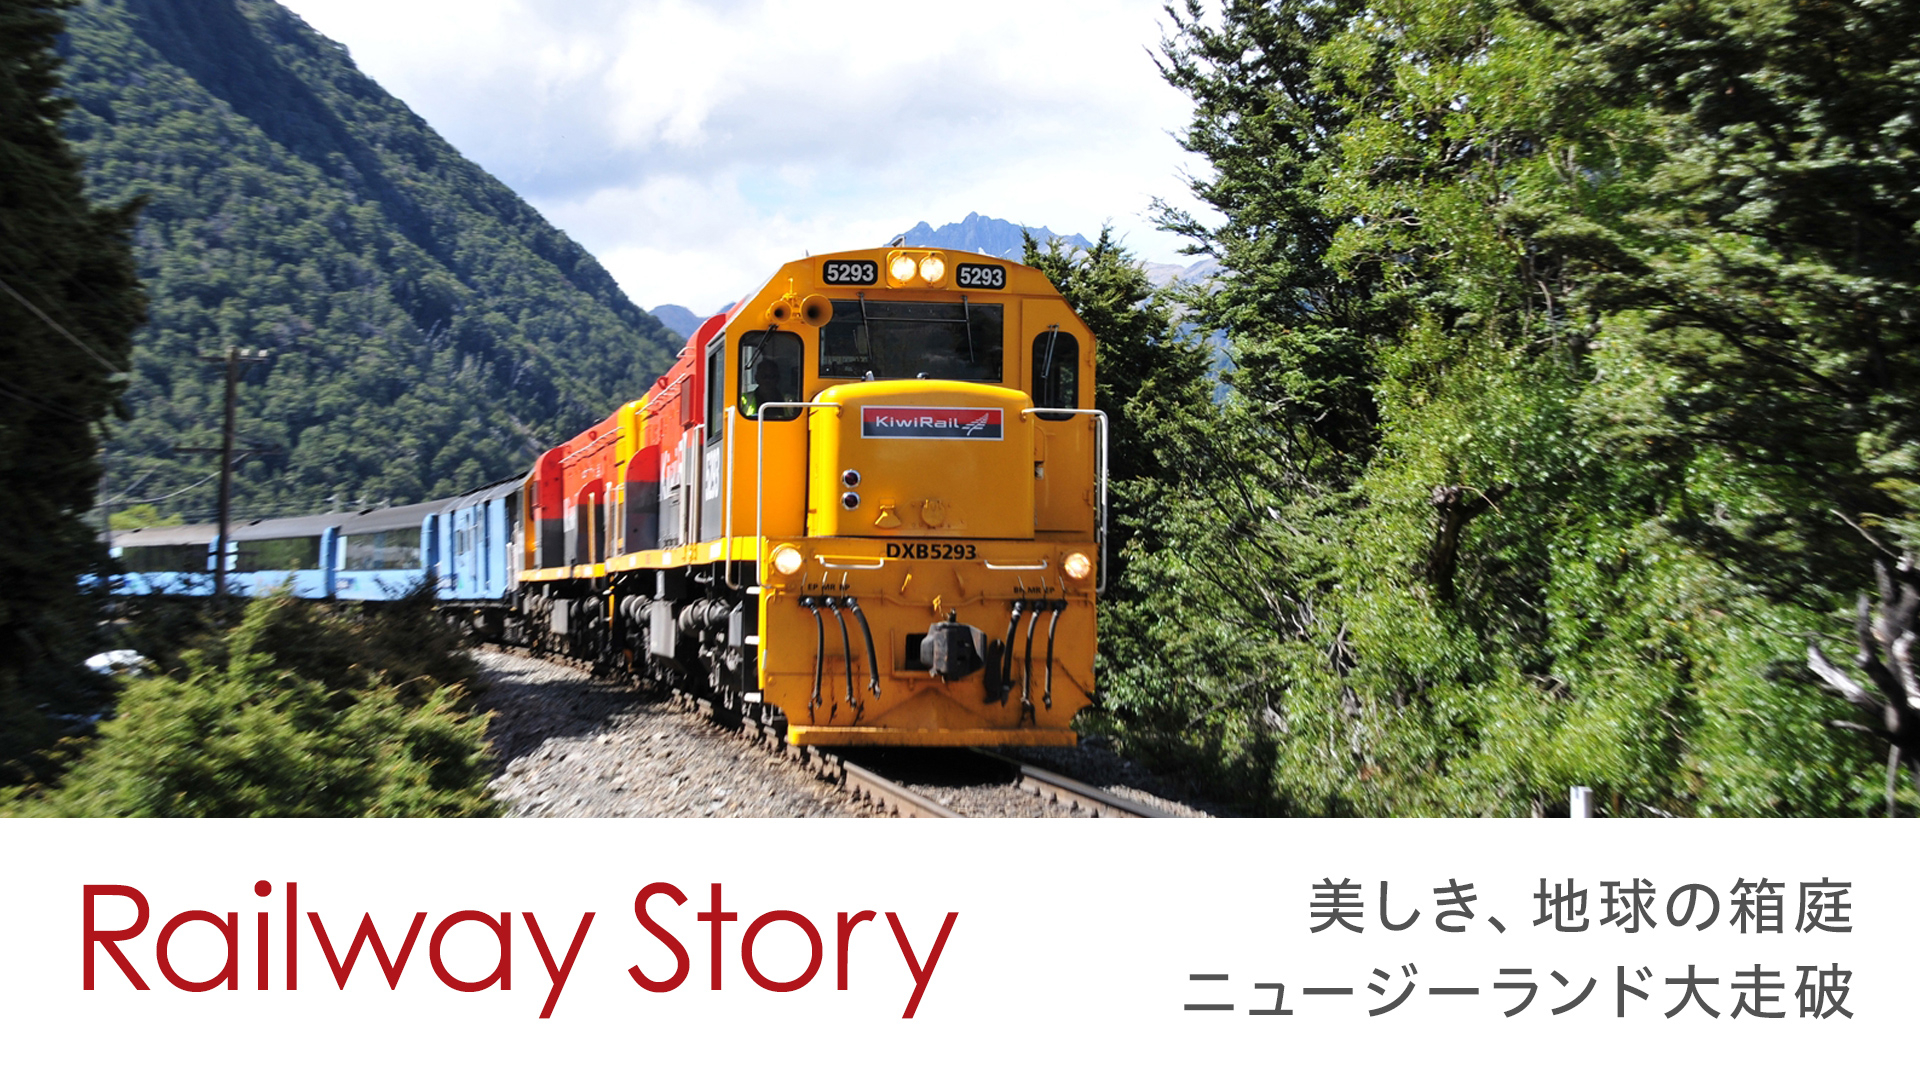 Railway Story 美しき、地球の箱庭 ニュージーランド大走破 | WOWOWオンデマンドで見る